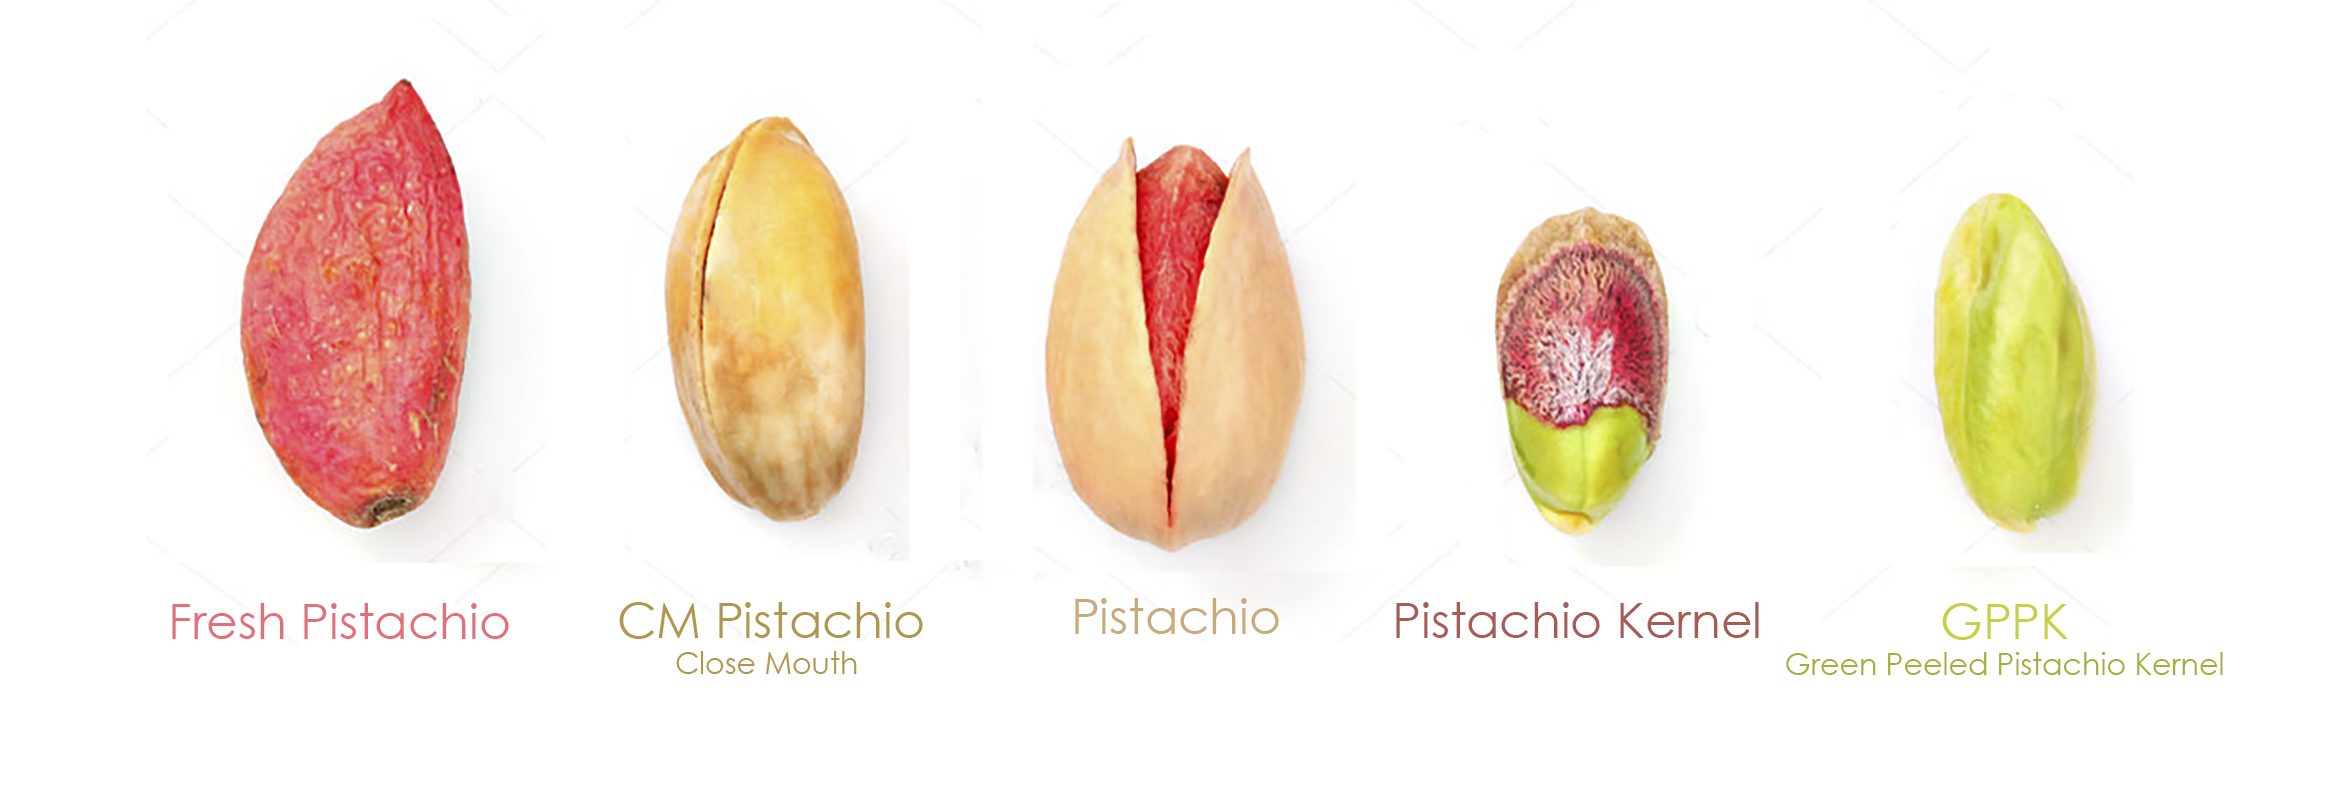 pistachio shells when you eat pistachio shells